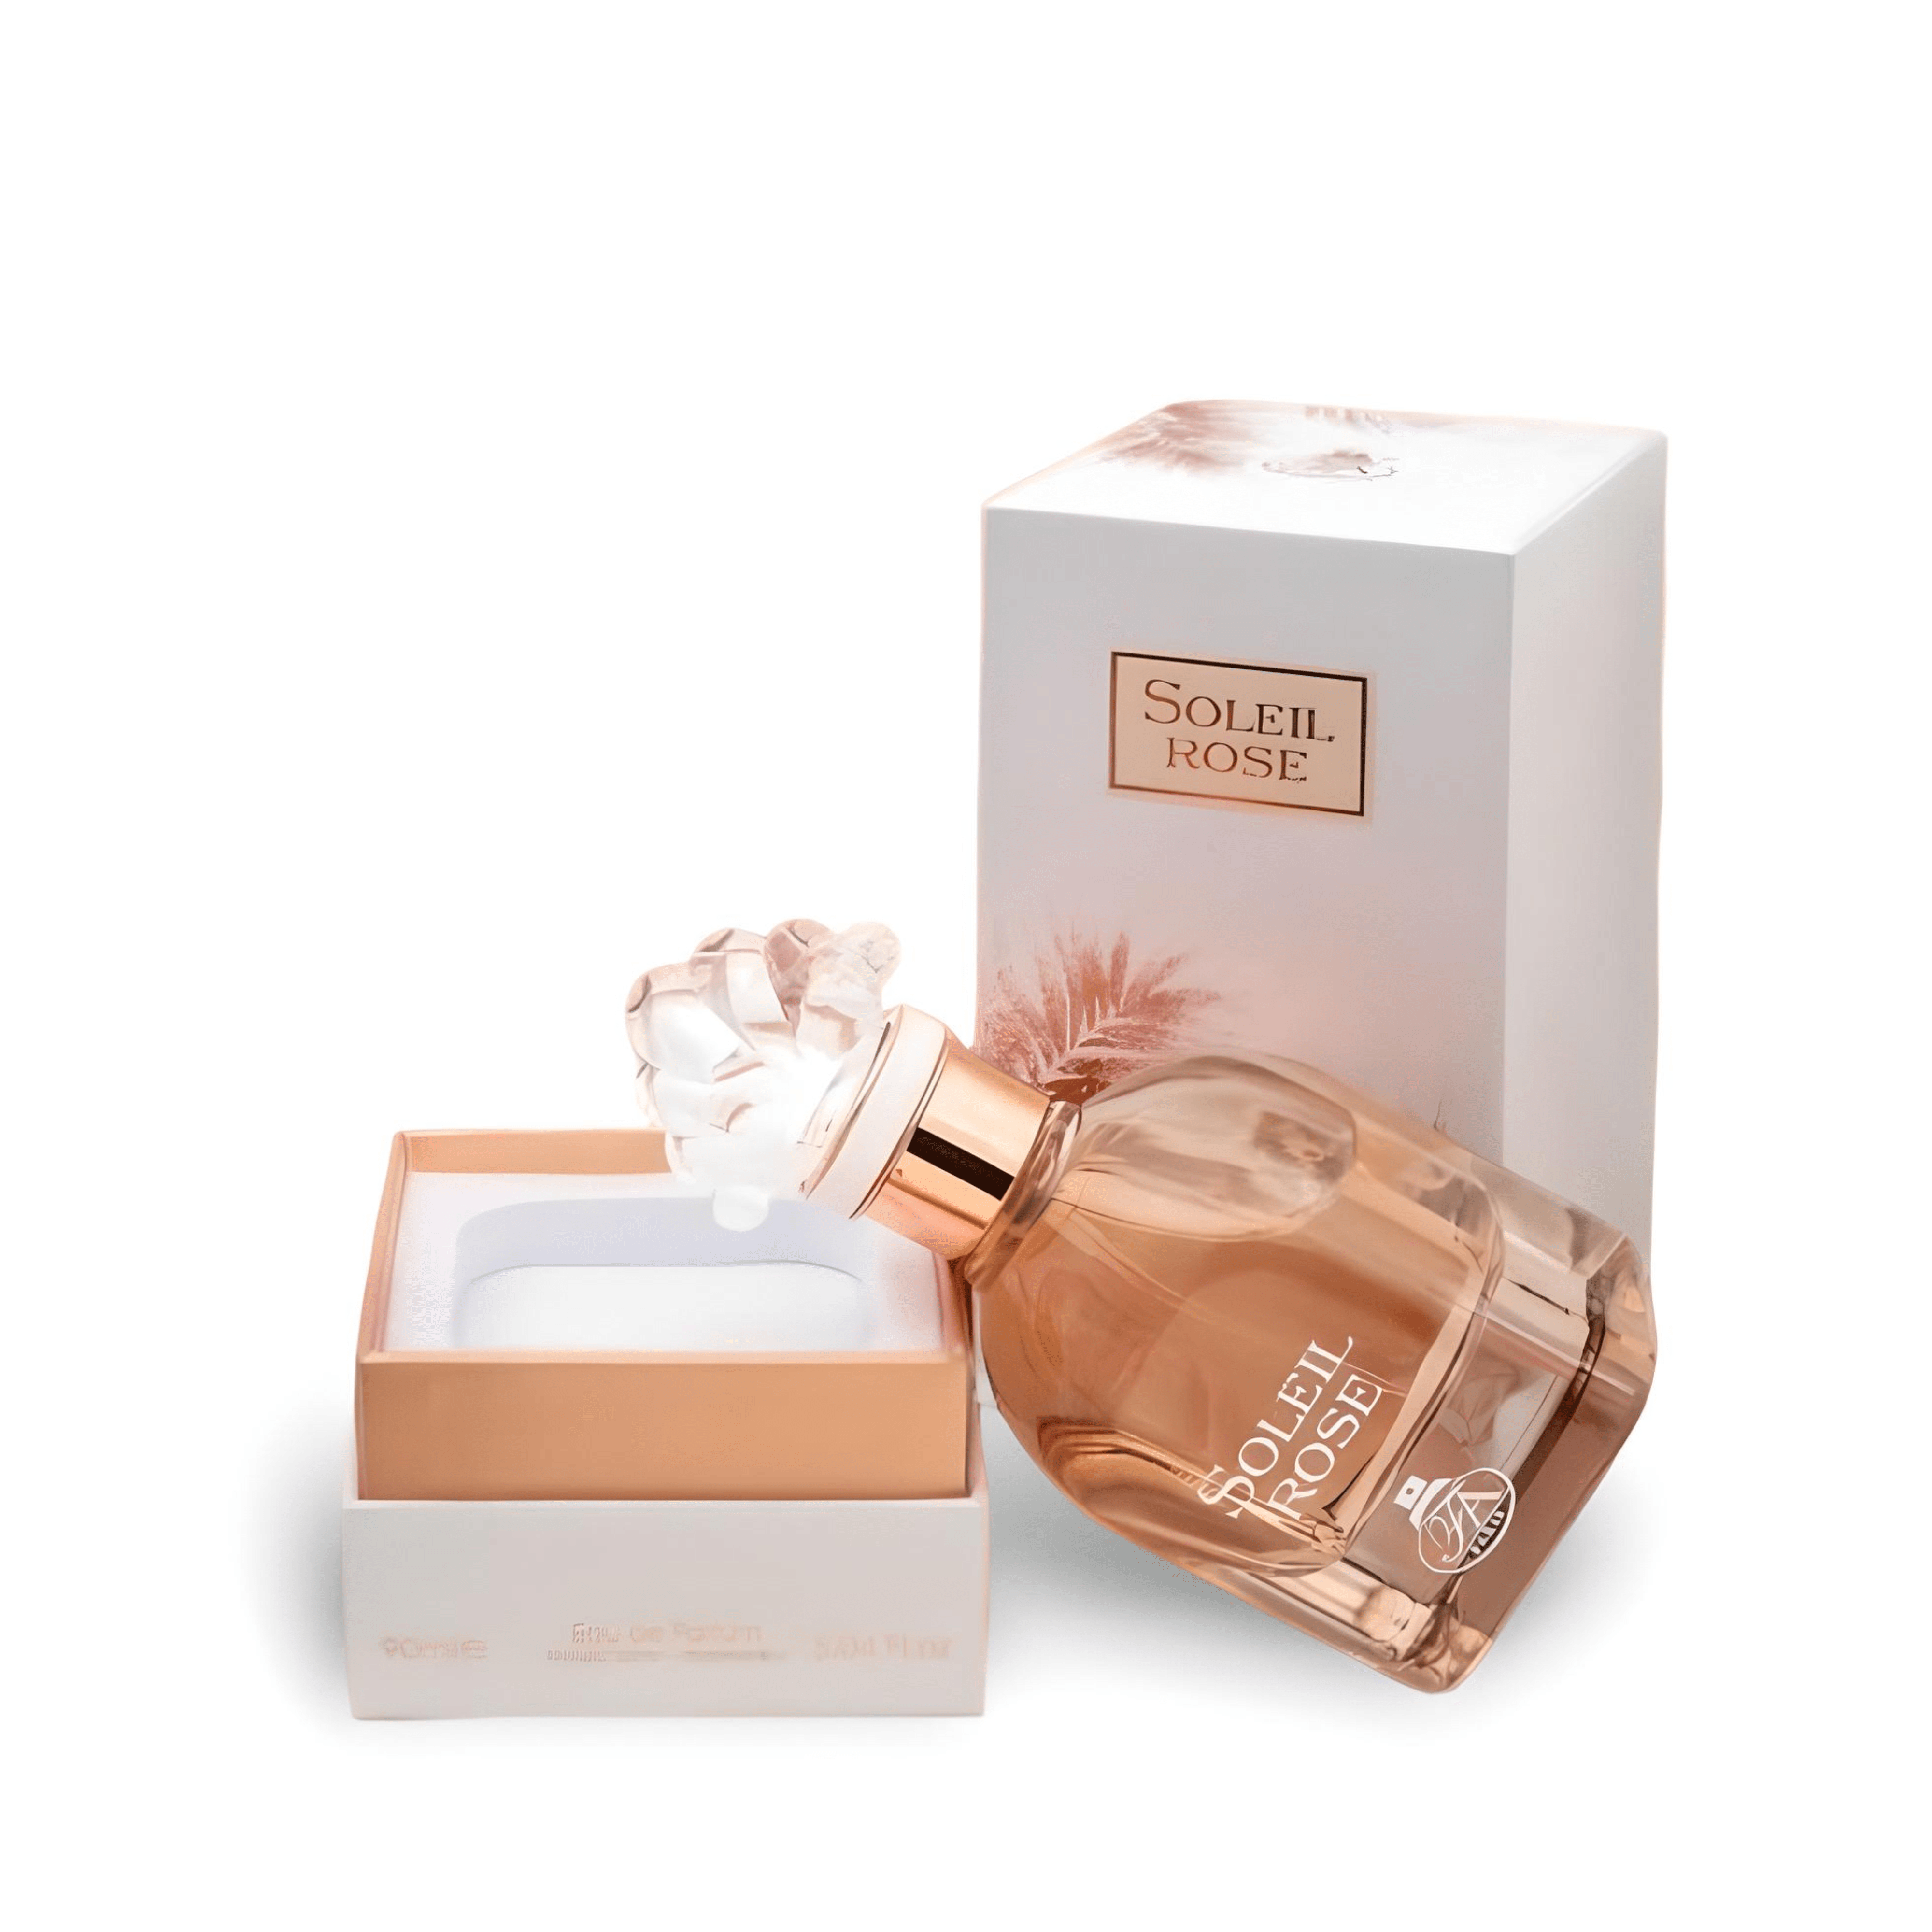 Soleil Rose Perfume Eau De Parfum 90Ml By Fa Paris (Fragrance World) (Inspired By Le Fleur Narcotique )